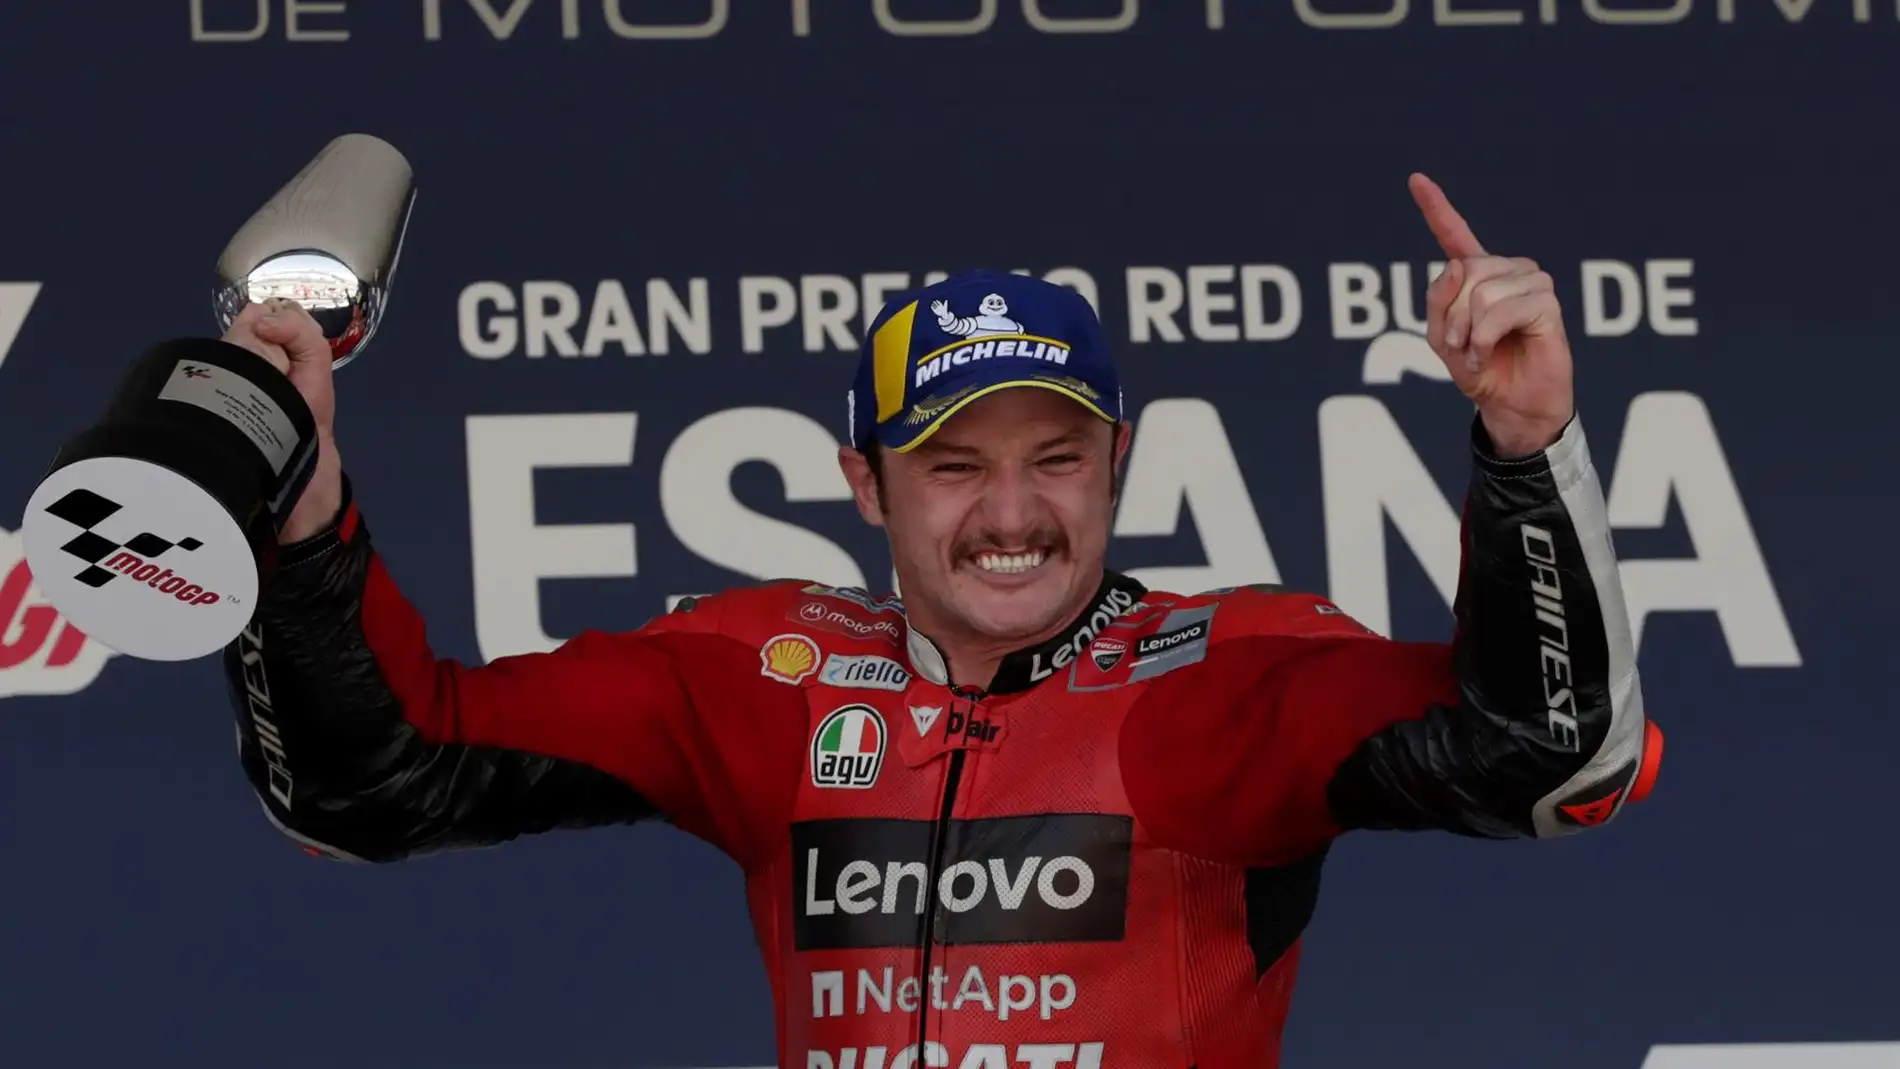 Miller reina en Jerez y Bagnaia agarra el liderato de MotoGP